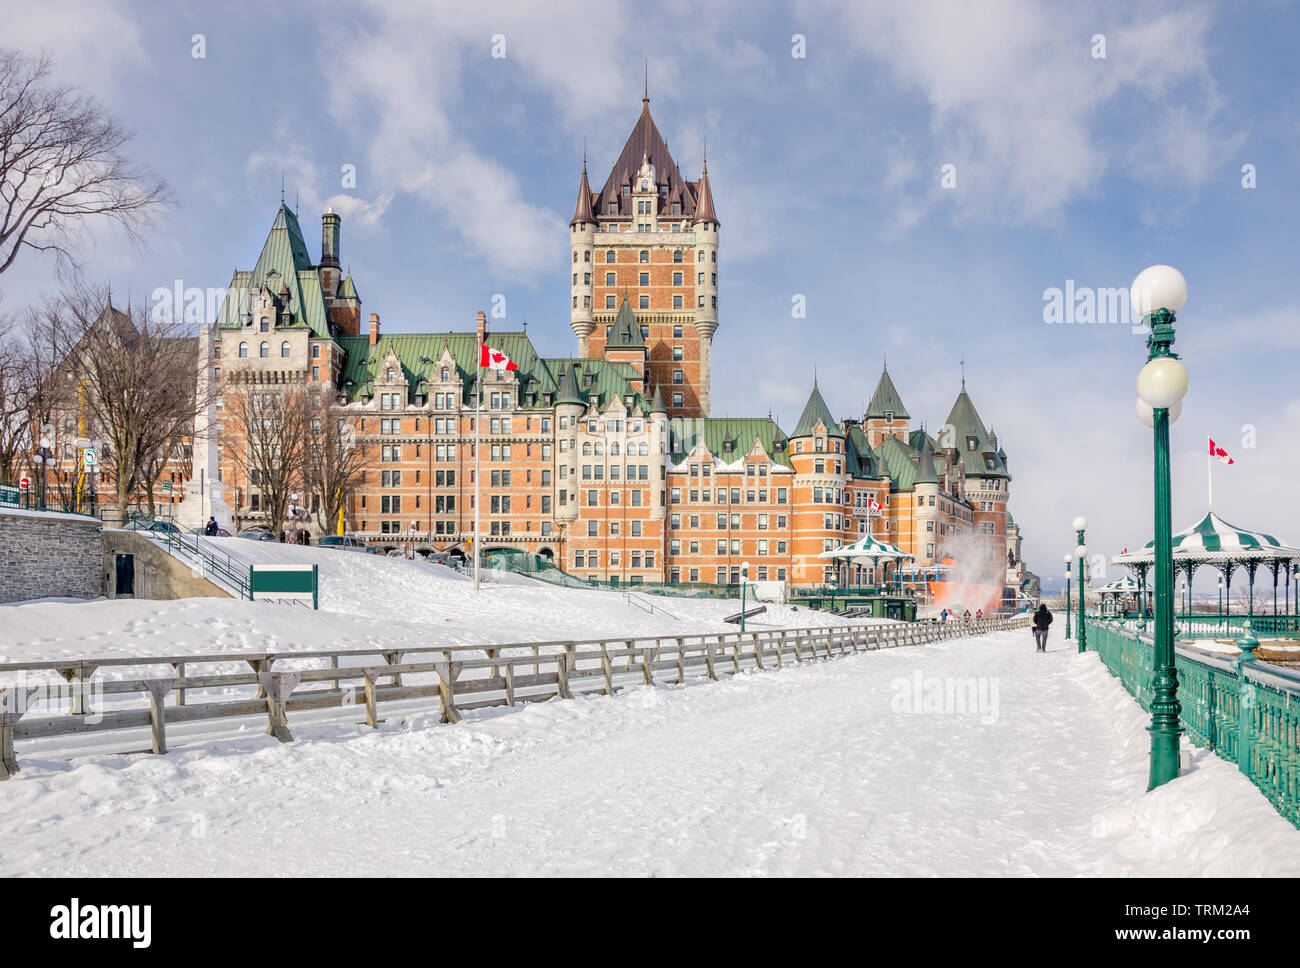 Vue sur le Château Frontenac et la terrasse Dufferin couvertes de neige sur une froide journée d'hiver. La ville de Québec, Canada. Banque D'Images